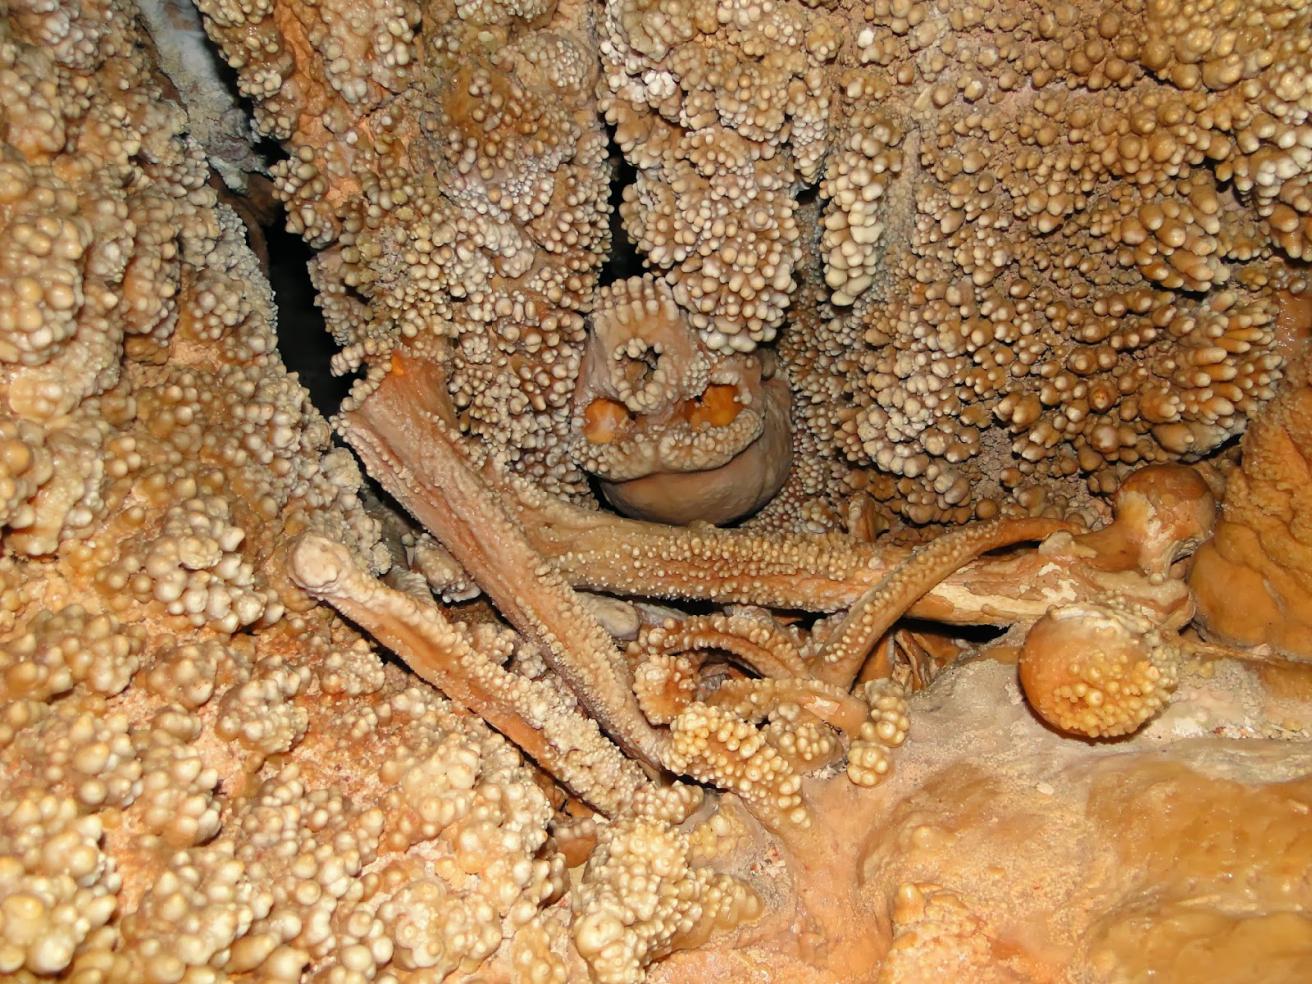 "Altamura Man", der faldt ned i synkehul for 150,000 år siden, sultede ihjel og "smeltede sammen" med dens vægge 1